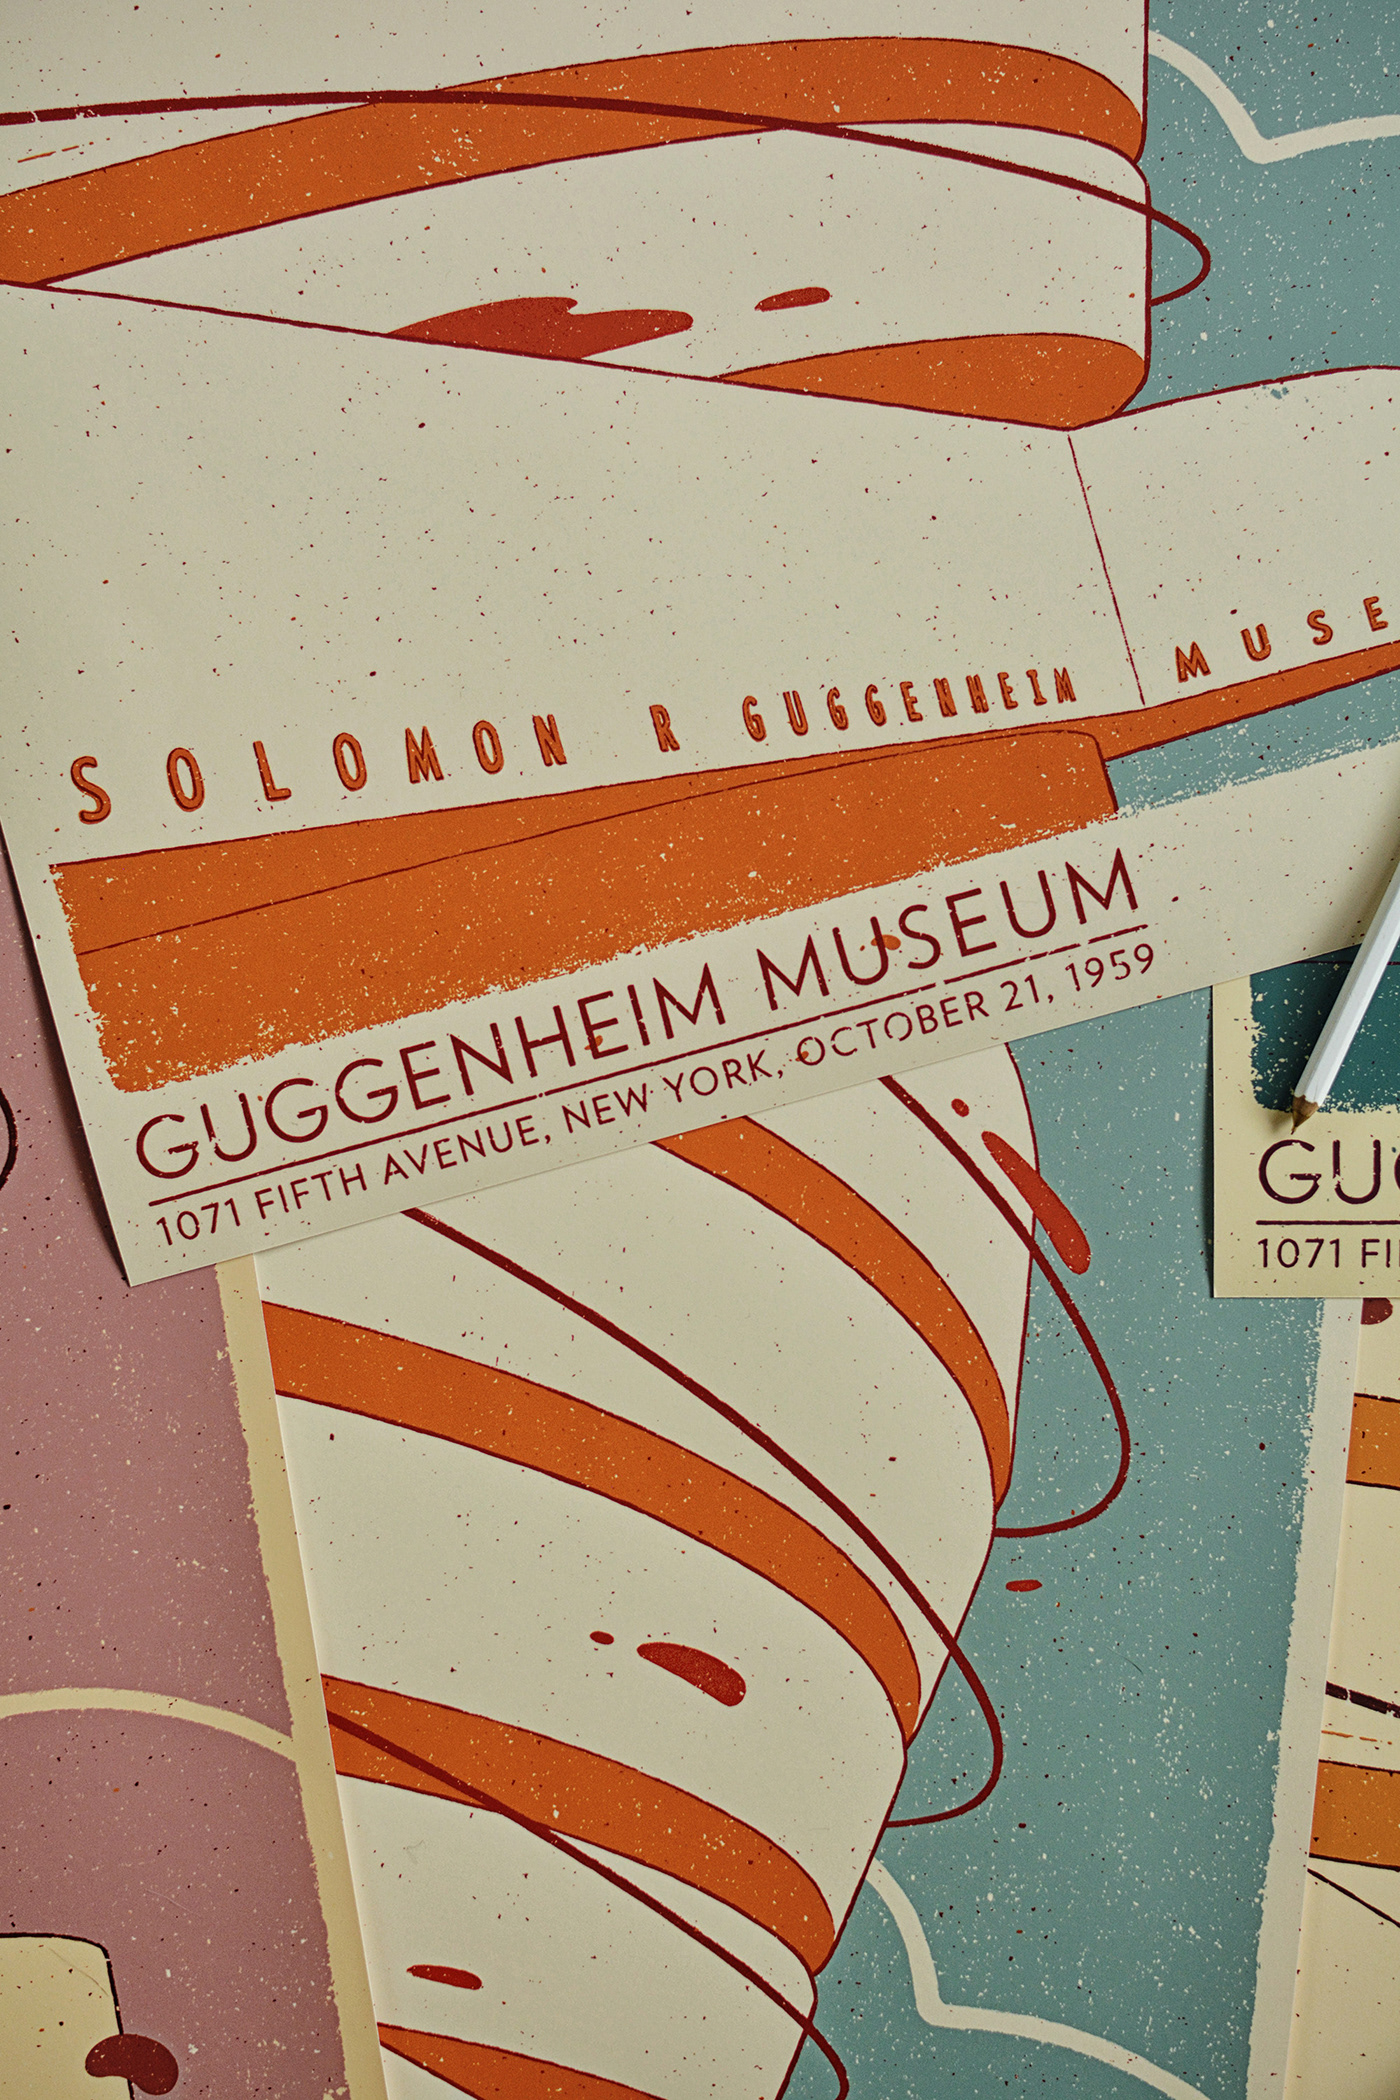 Frank Lloyd Wright guggenheim guggenheim museum modern architecture New York poster screenprint silkscreen Taliesin